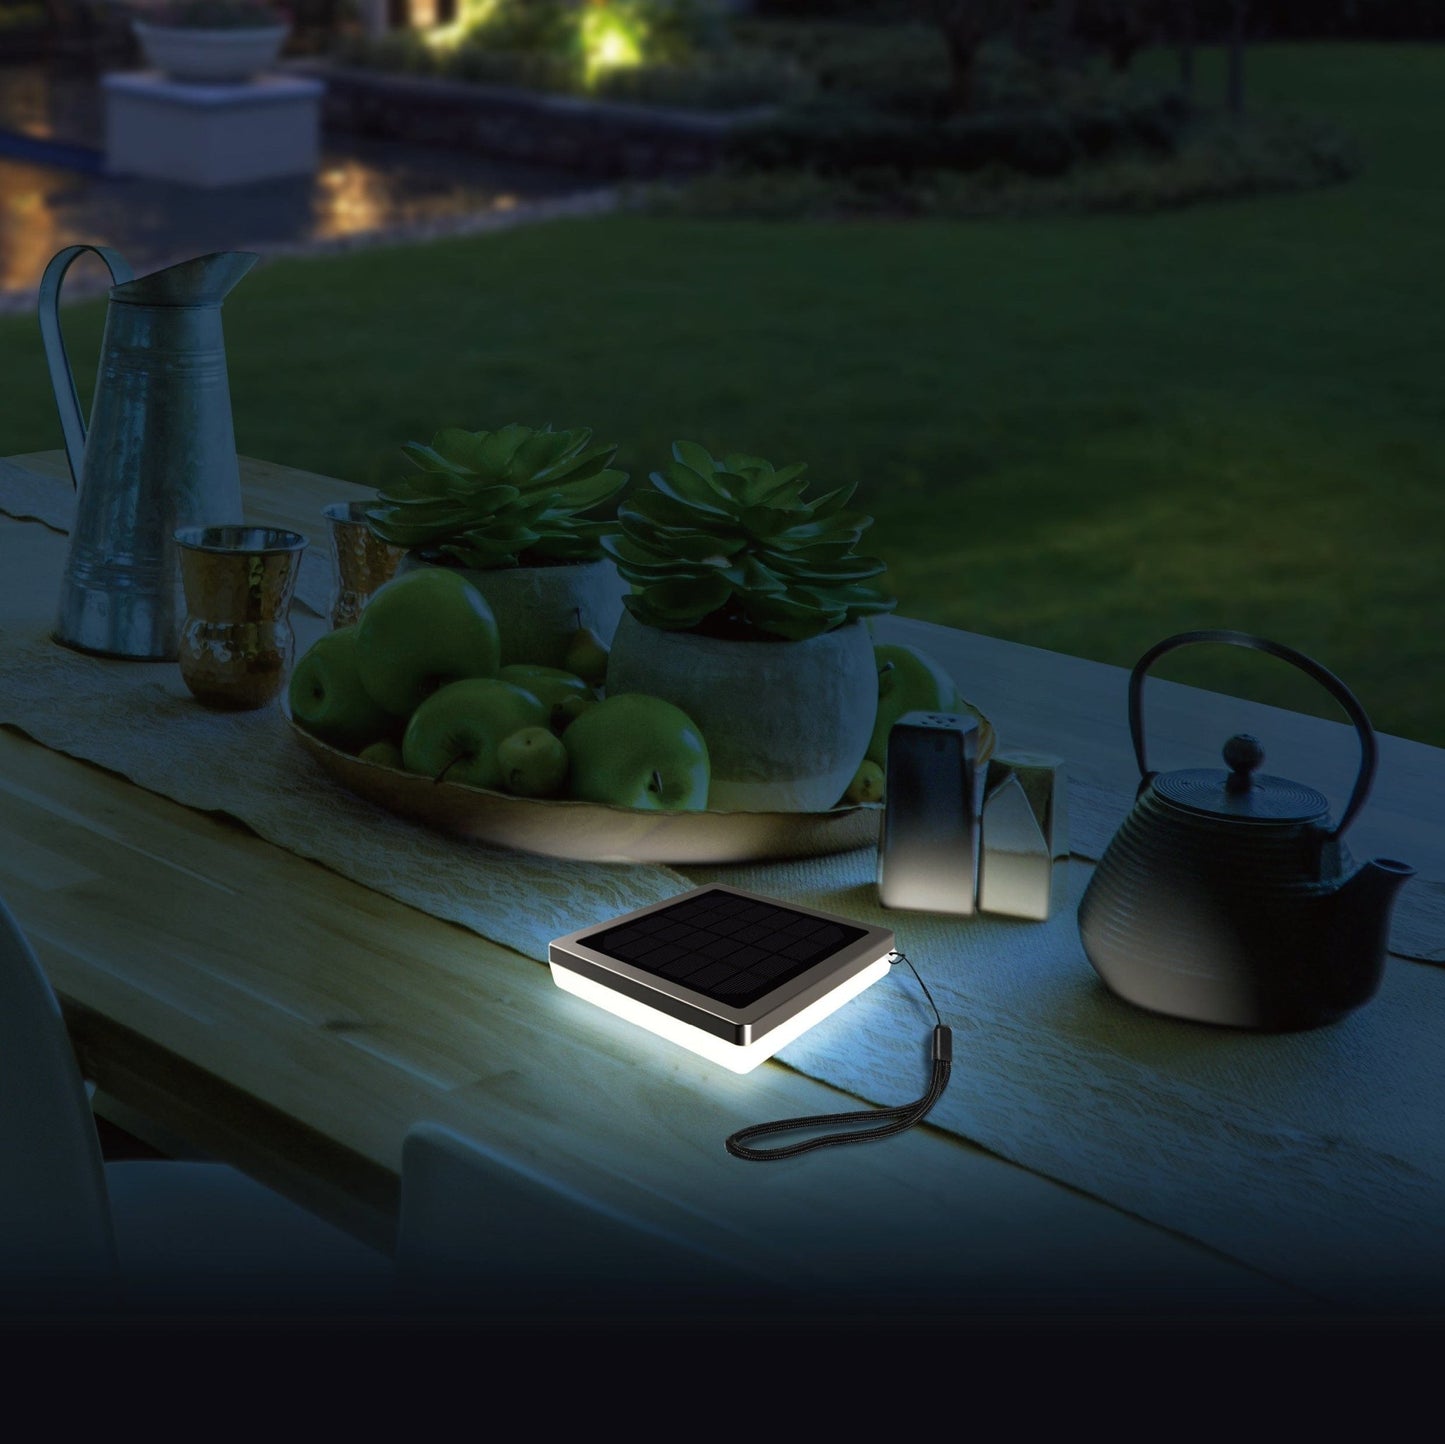 Lampe de table Led solaire inox NOMADE -5 modes d'éclairages de 40 à 270 lumens - Prise USB - Lumihome-France.com